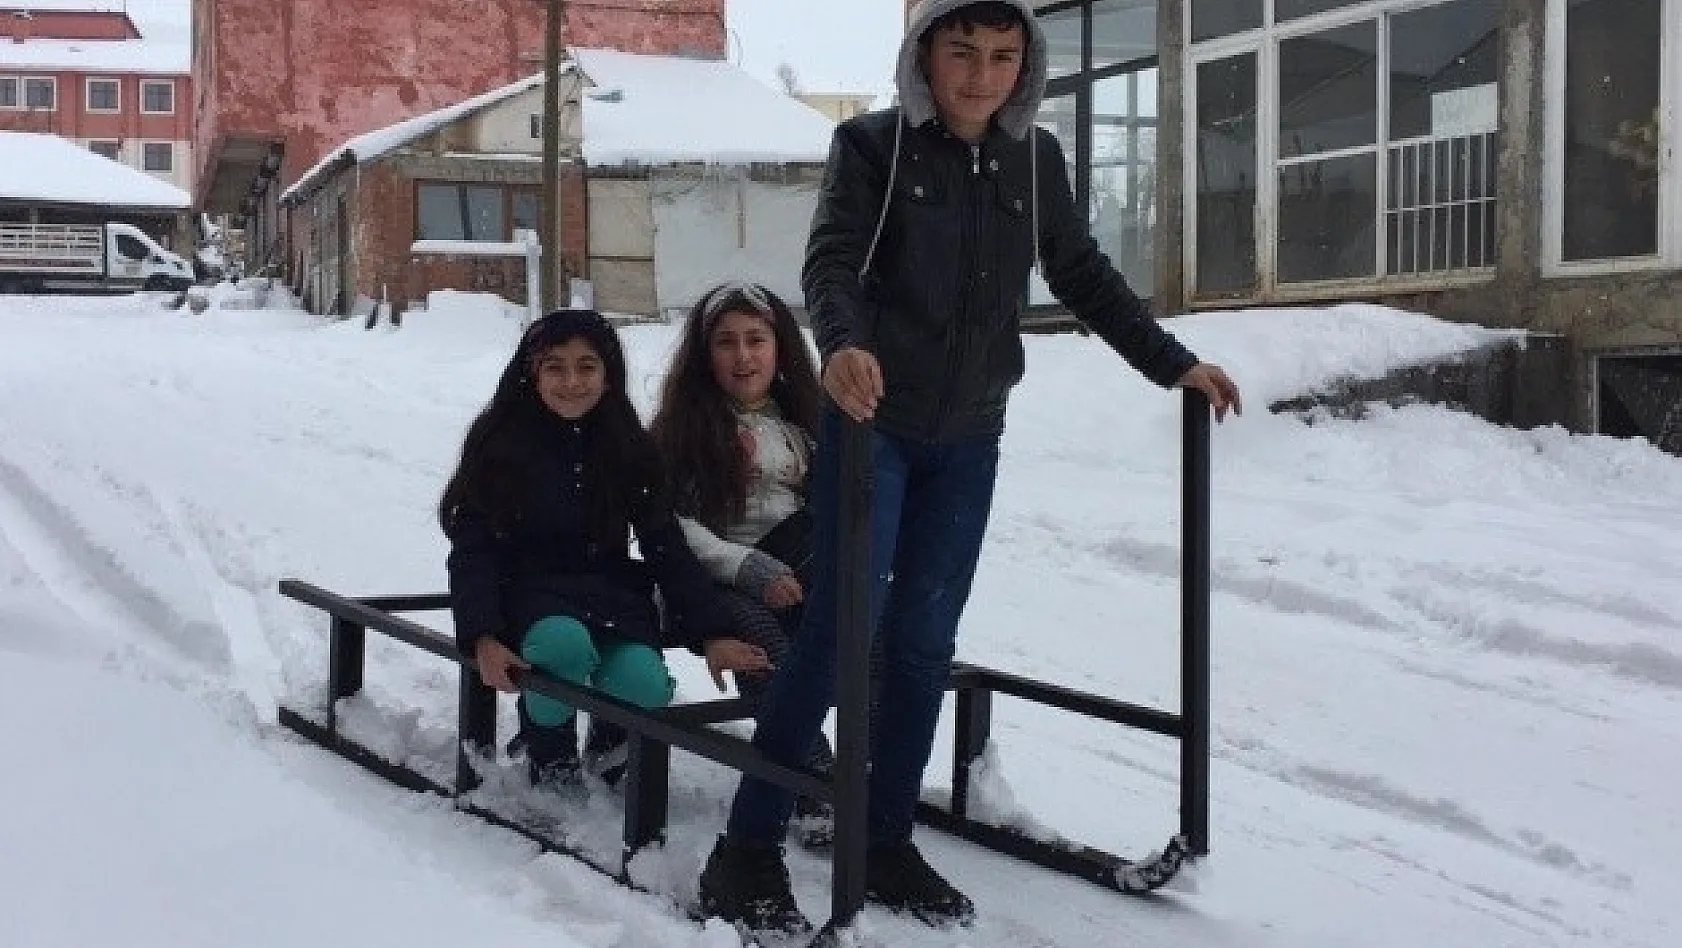 Karlıova'da Çocuklar, Karda Kızakla Eğlendi